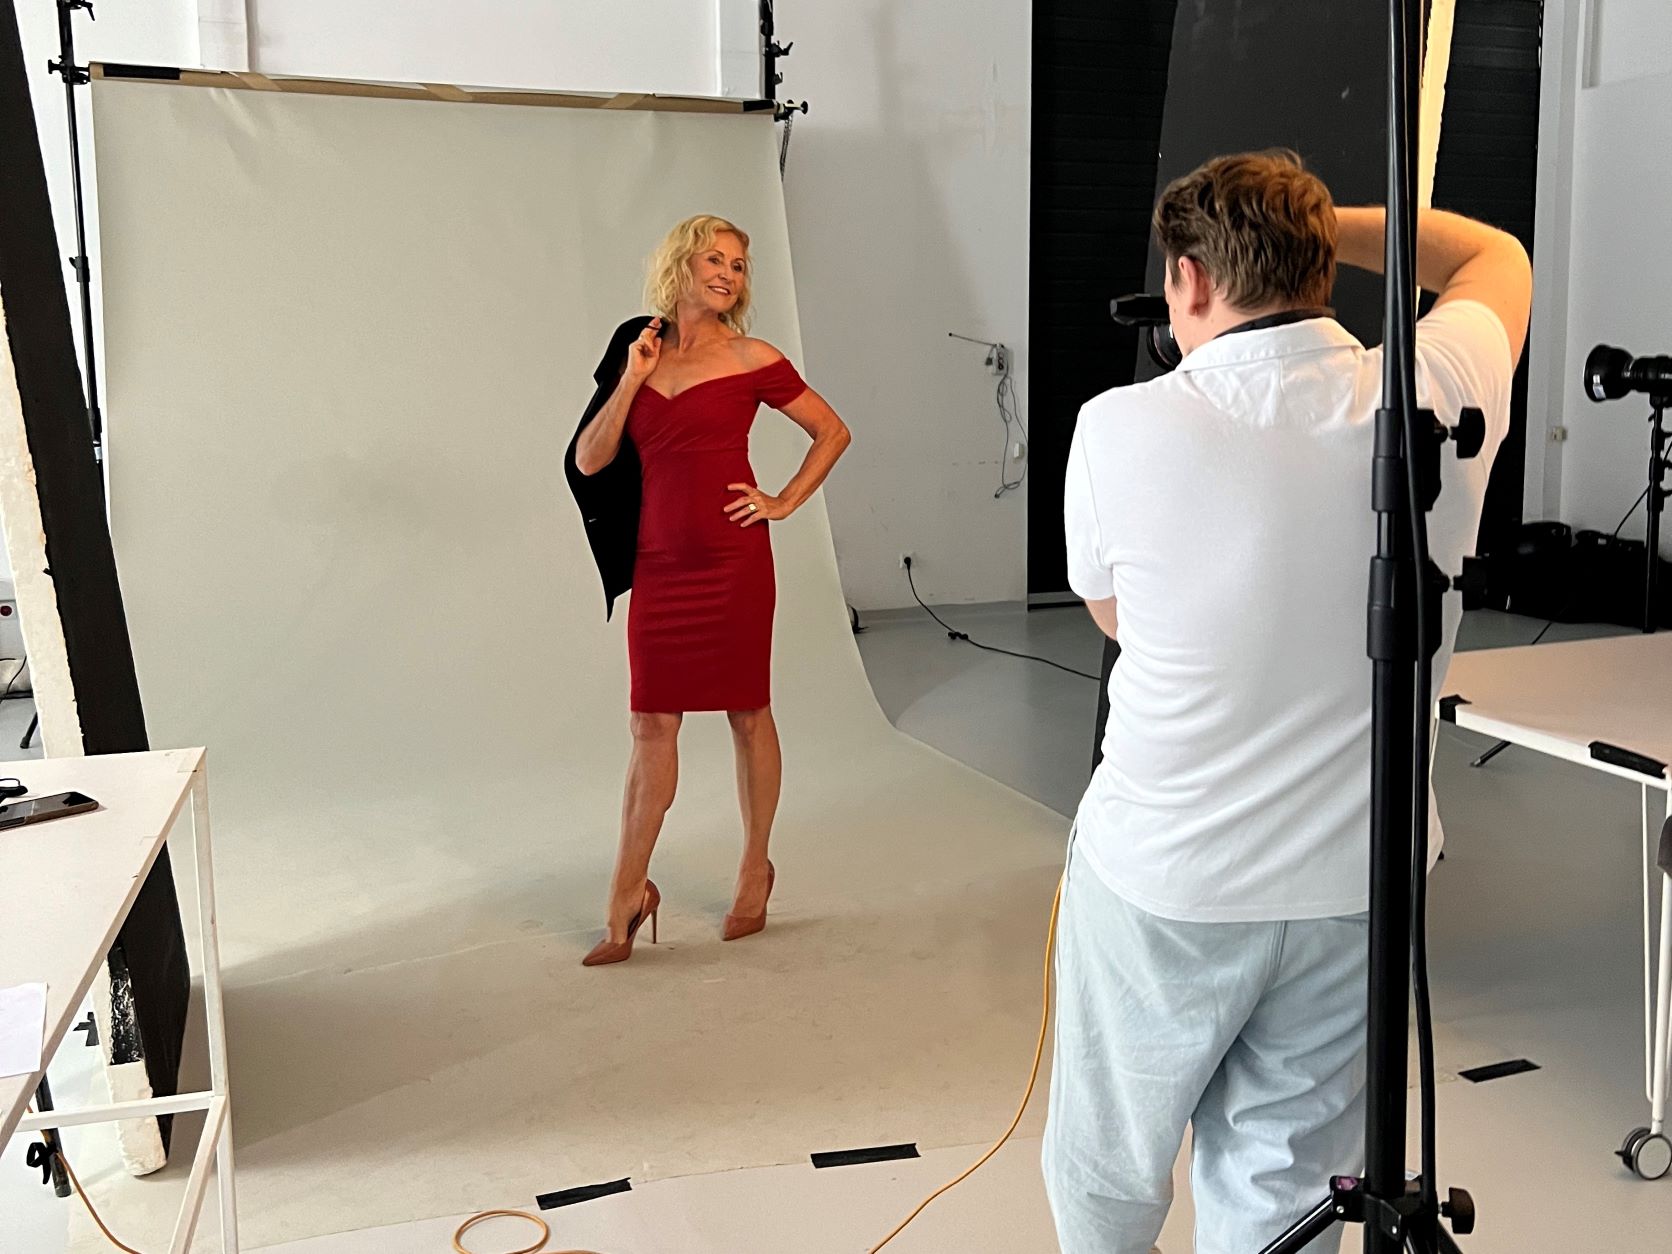 Agencja Silver Models sesja zdjęciowa z modelką 50+ ubraną w czerwoną sukienkę